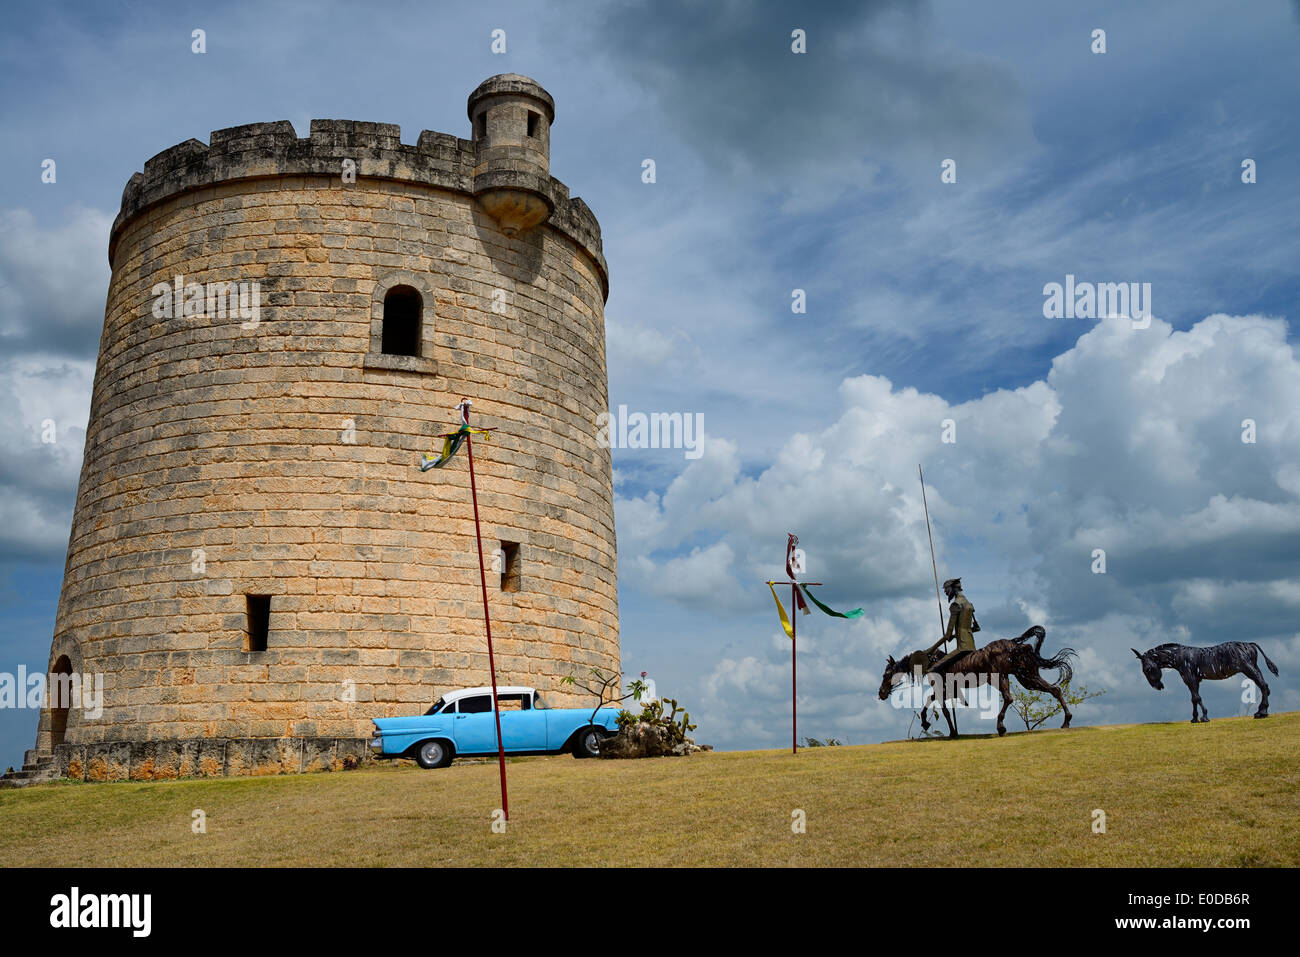 Don Quijote escultura de acero en un castillo de piedra, Atalaya ocultando una torre de agua en Varadero Cuba Foto de stock